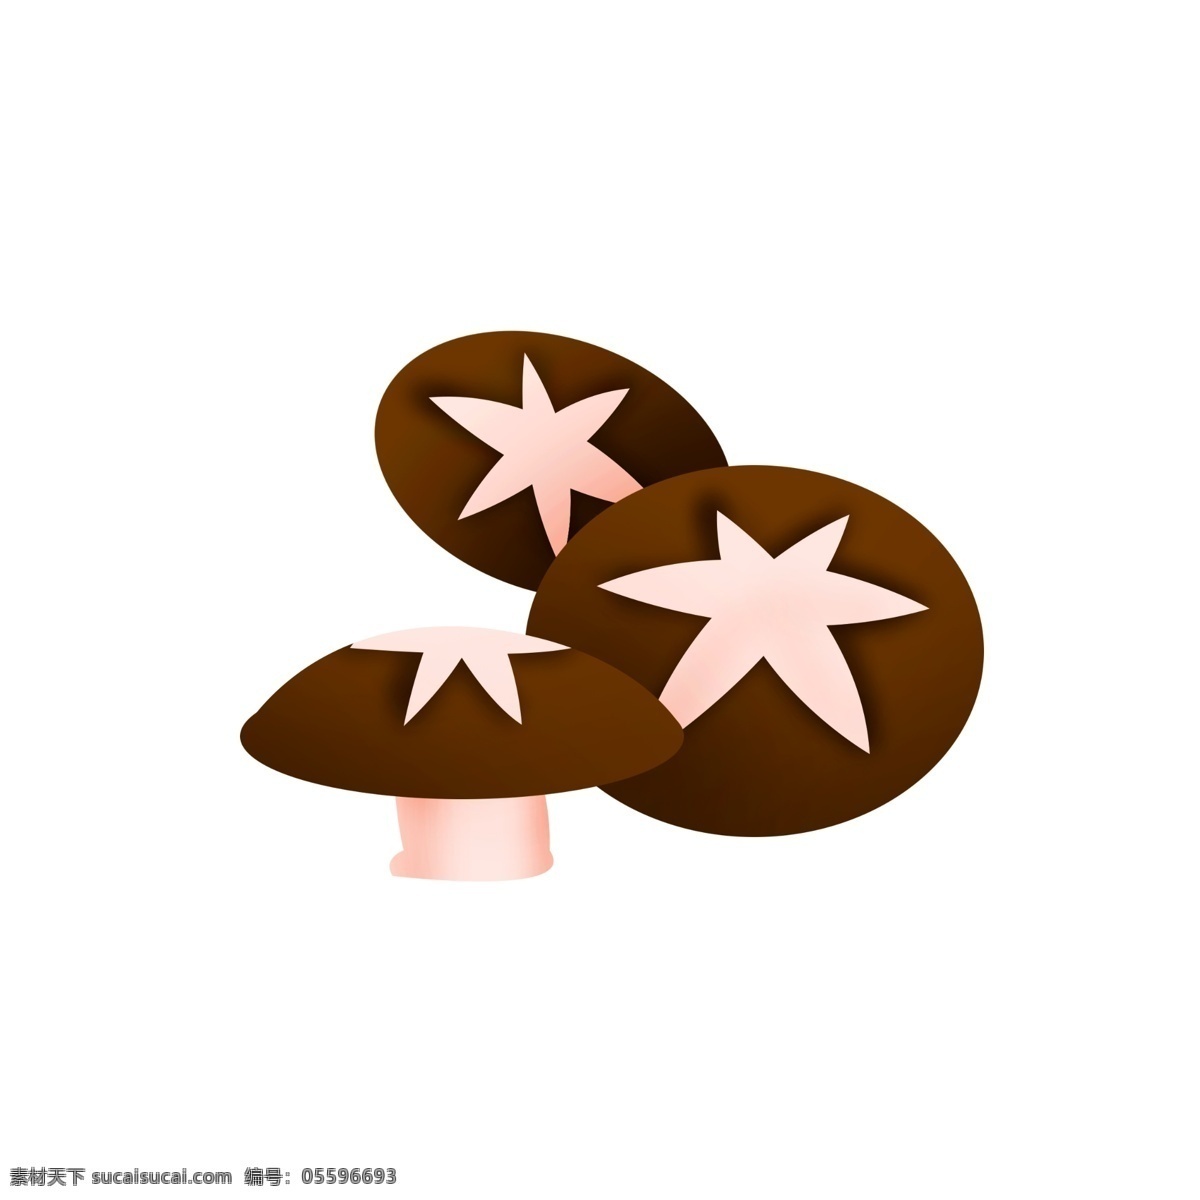 手绘 卡通 棕色 蘑菇 插画 卡通蘑菇 新鲜 美味 食品 香菇 手绘蘑菇 棕色蘑菇 火锅食材 菌类食物 蘑菇插画 餐饮食品